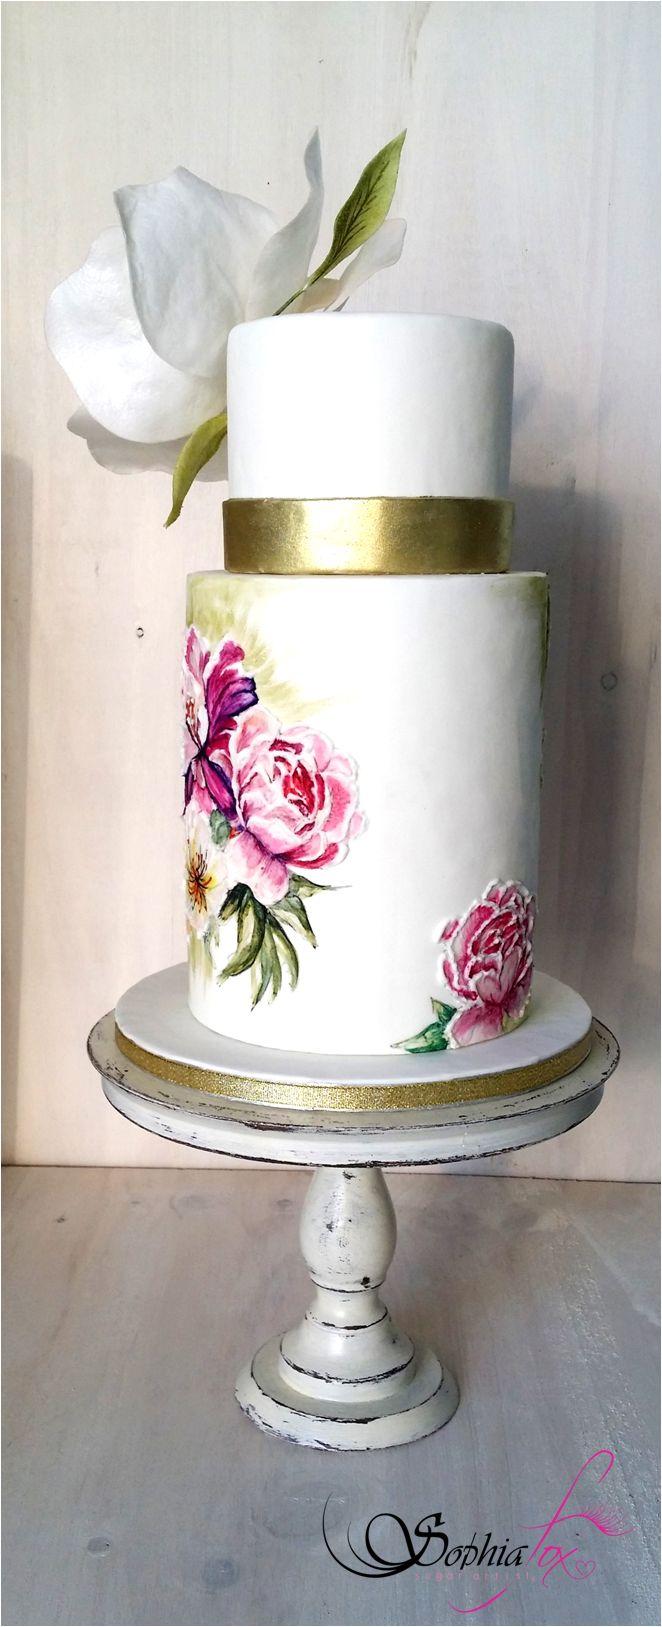 Свадьба - Sophia Fox - Painted Cakes -